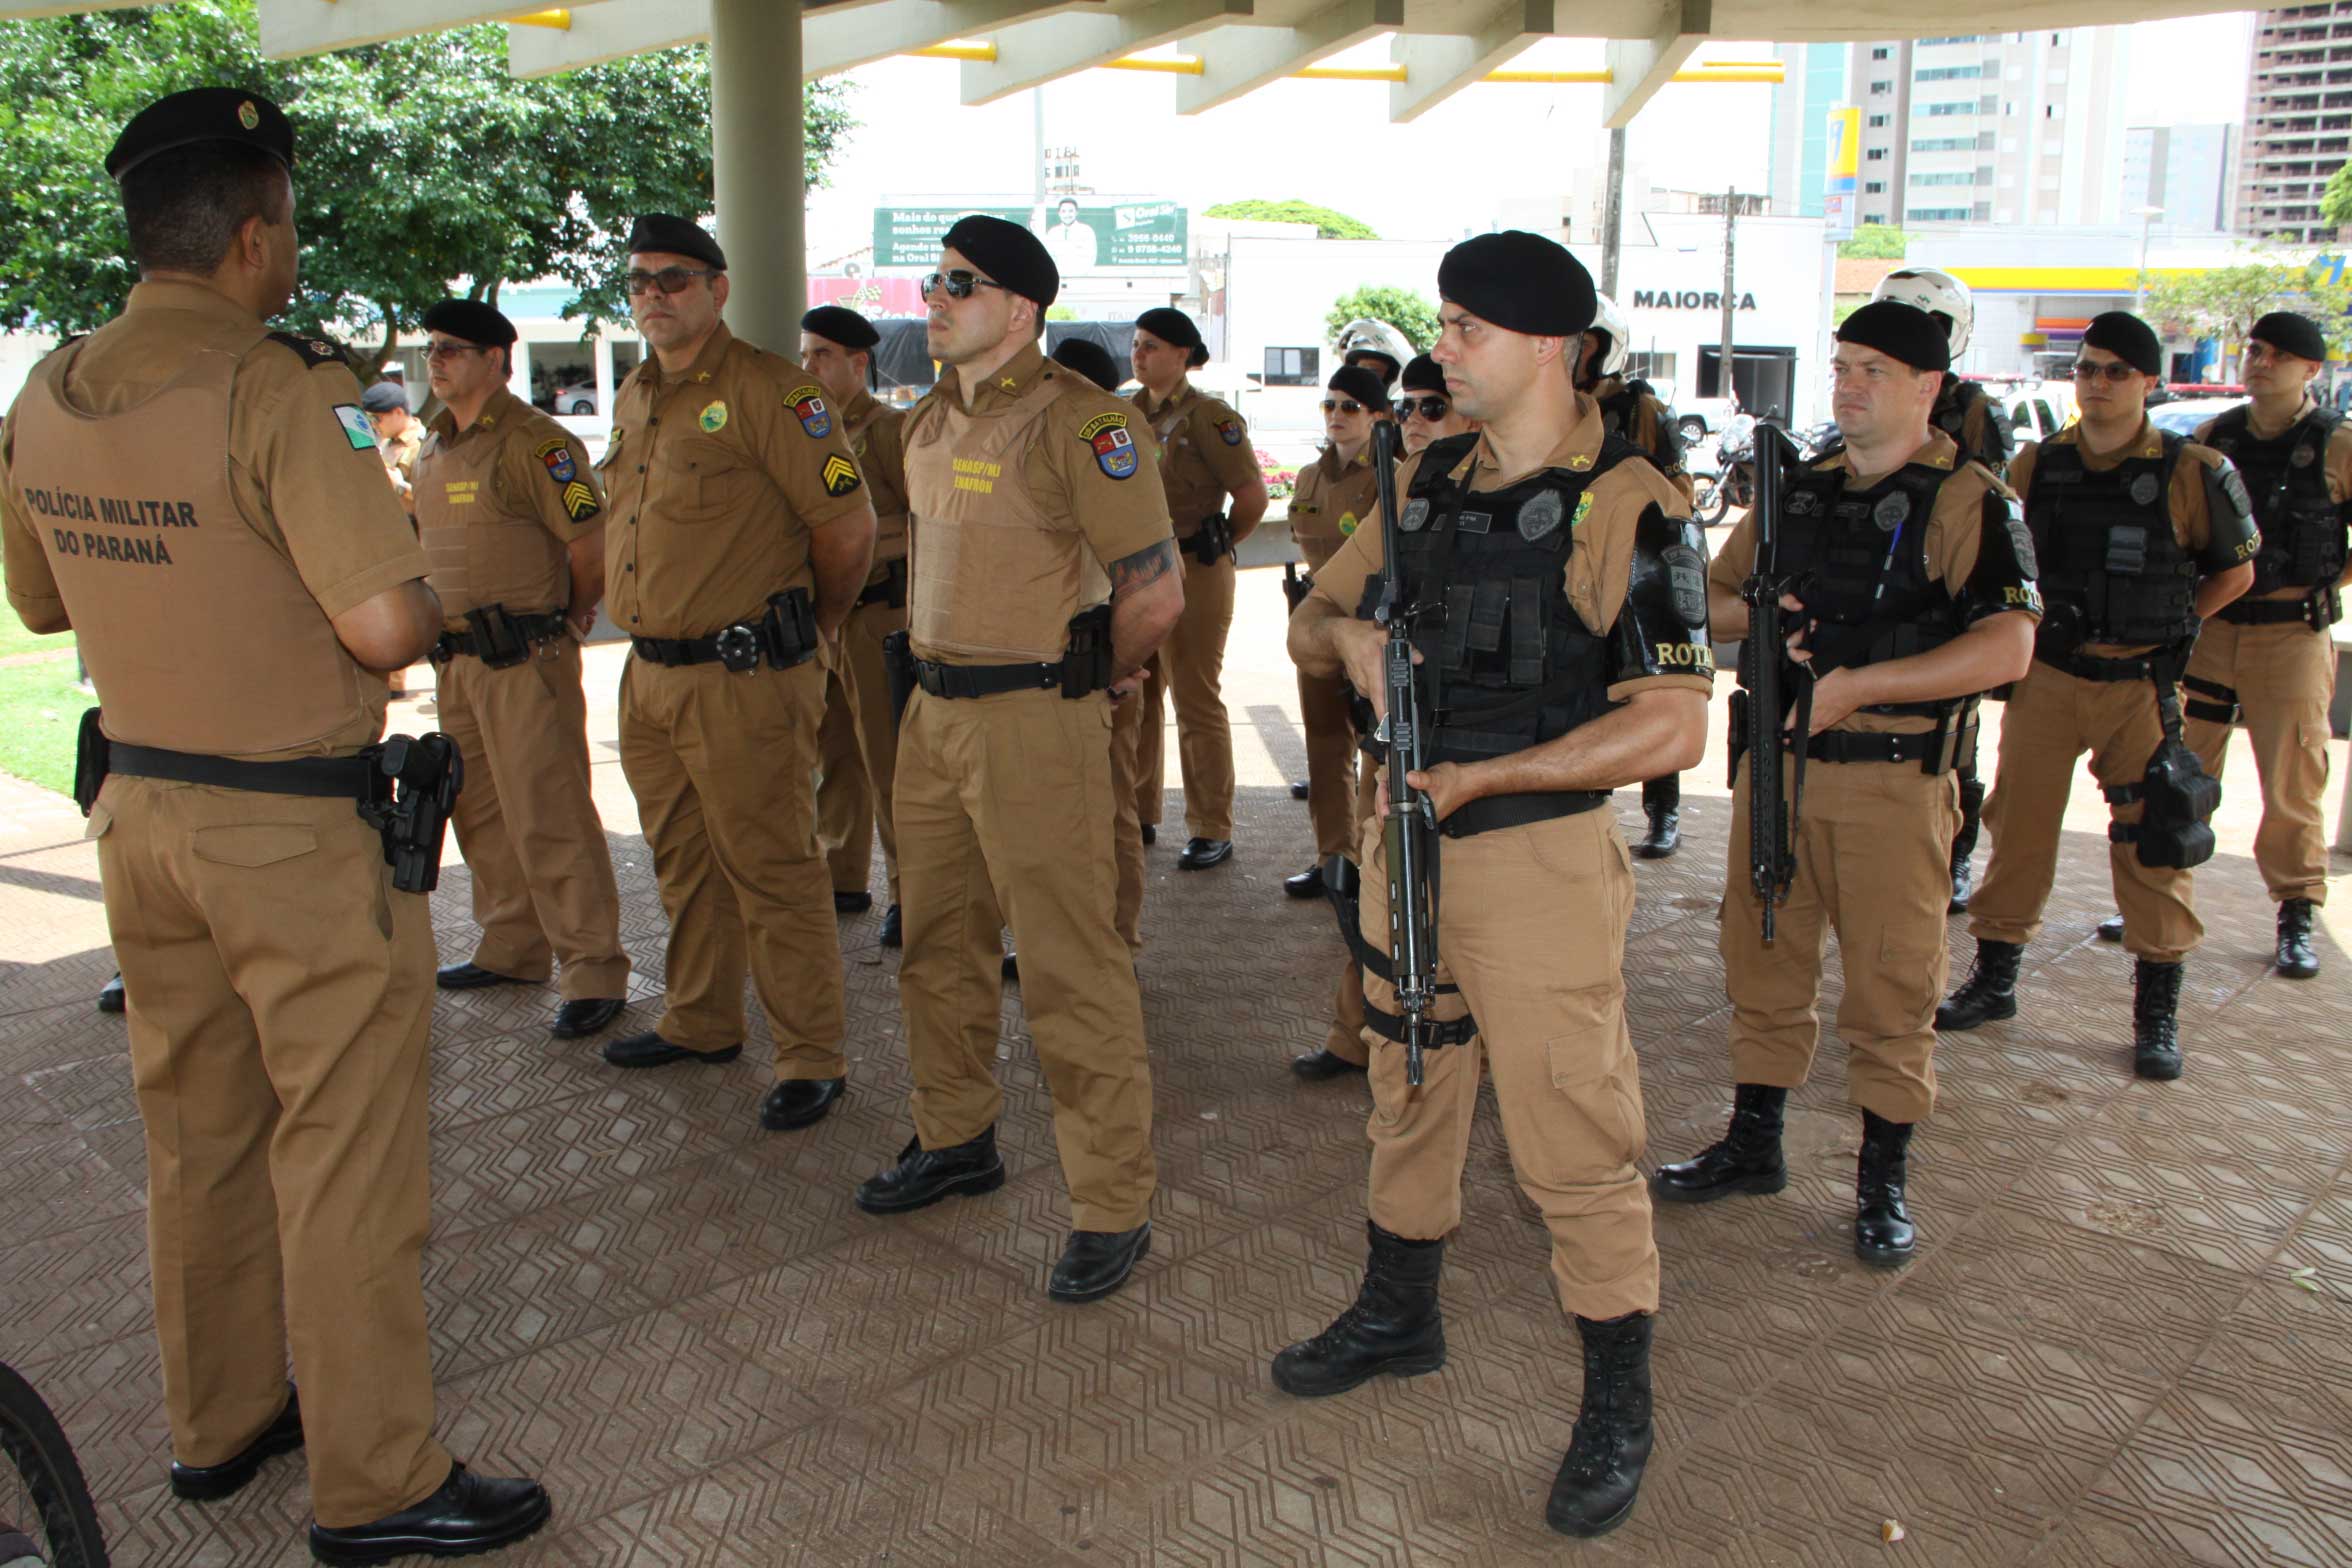 Operação Natal coloca mais policiais nas ruas de Umuarama